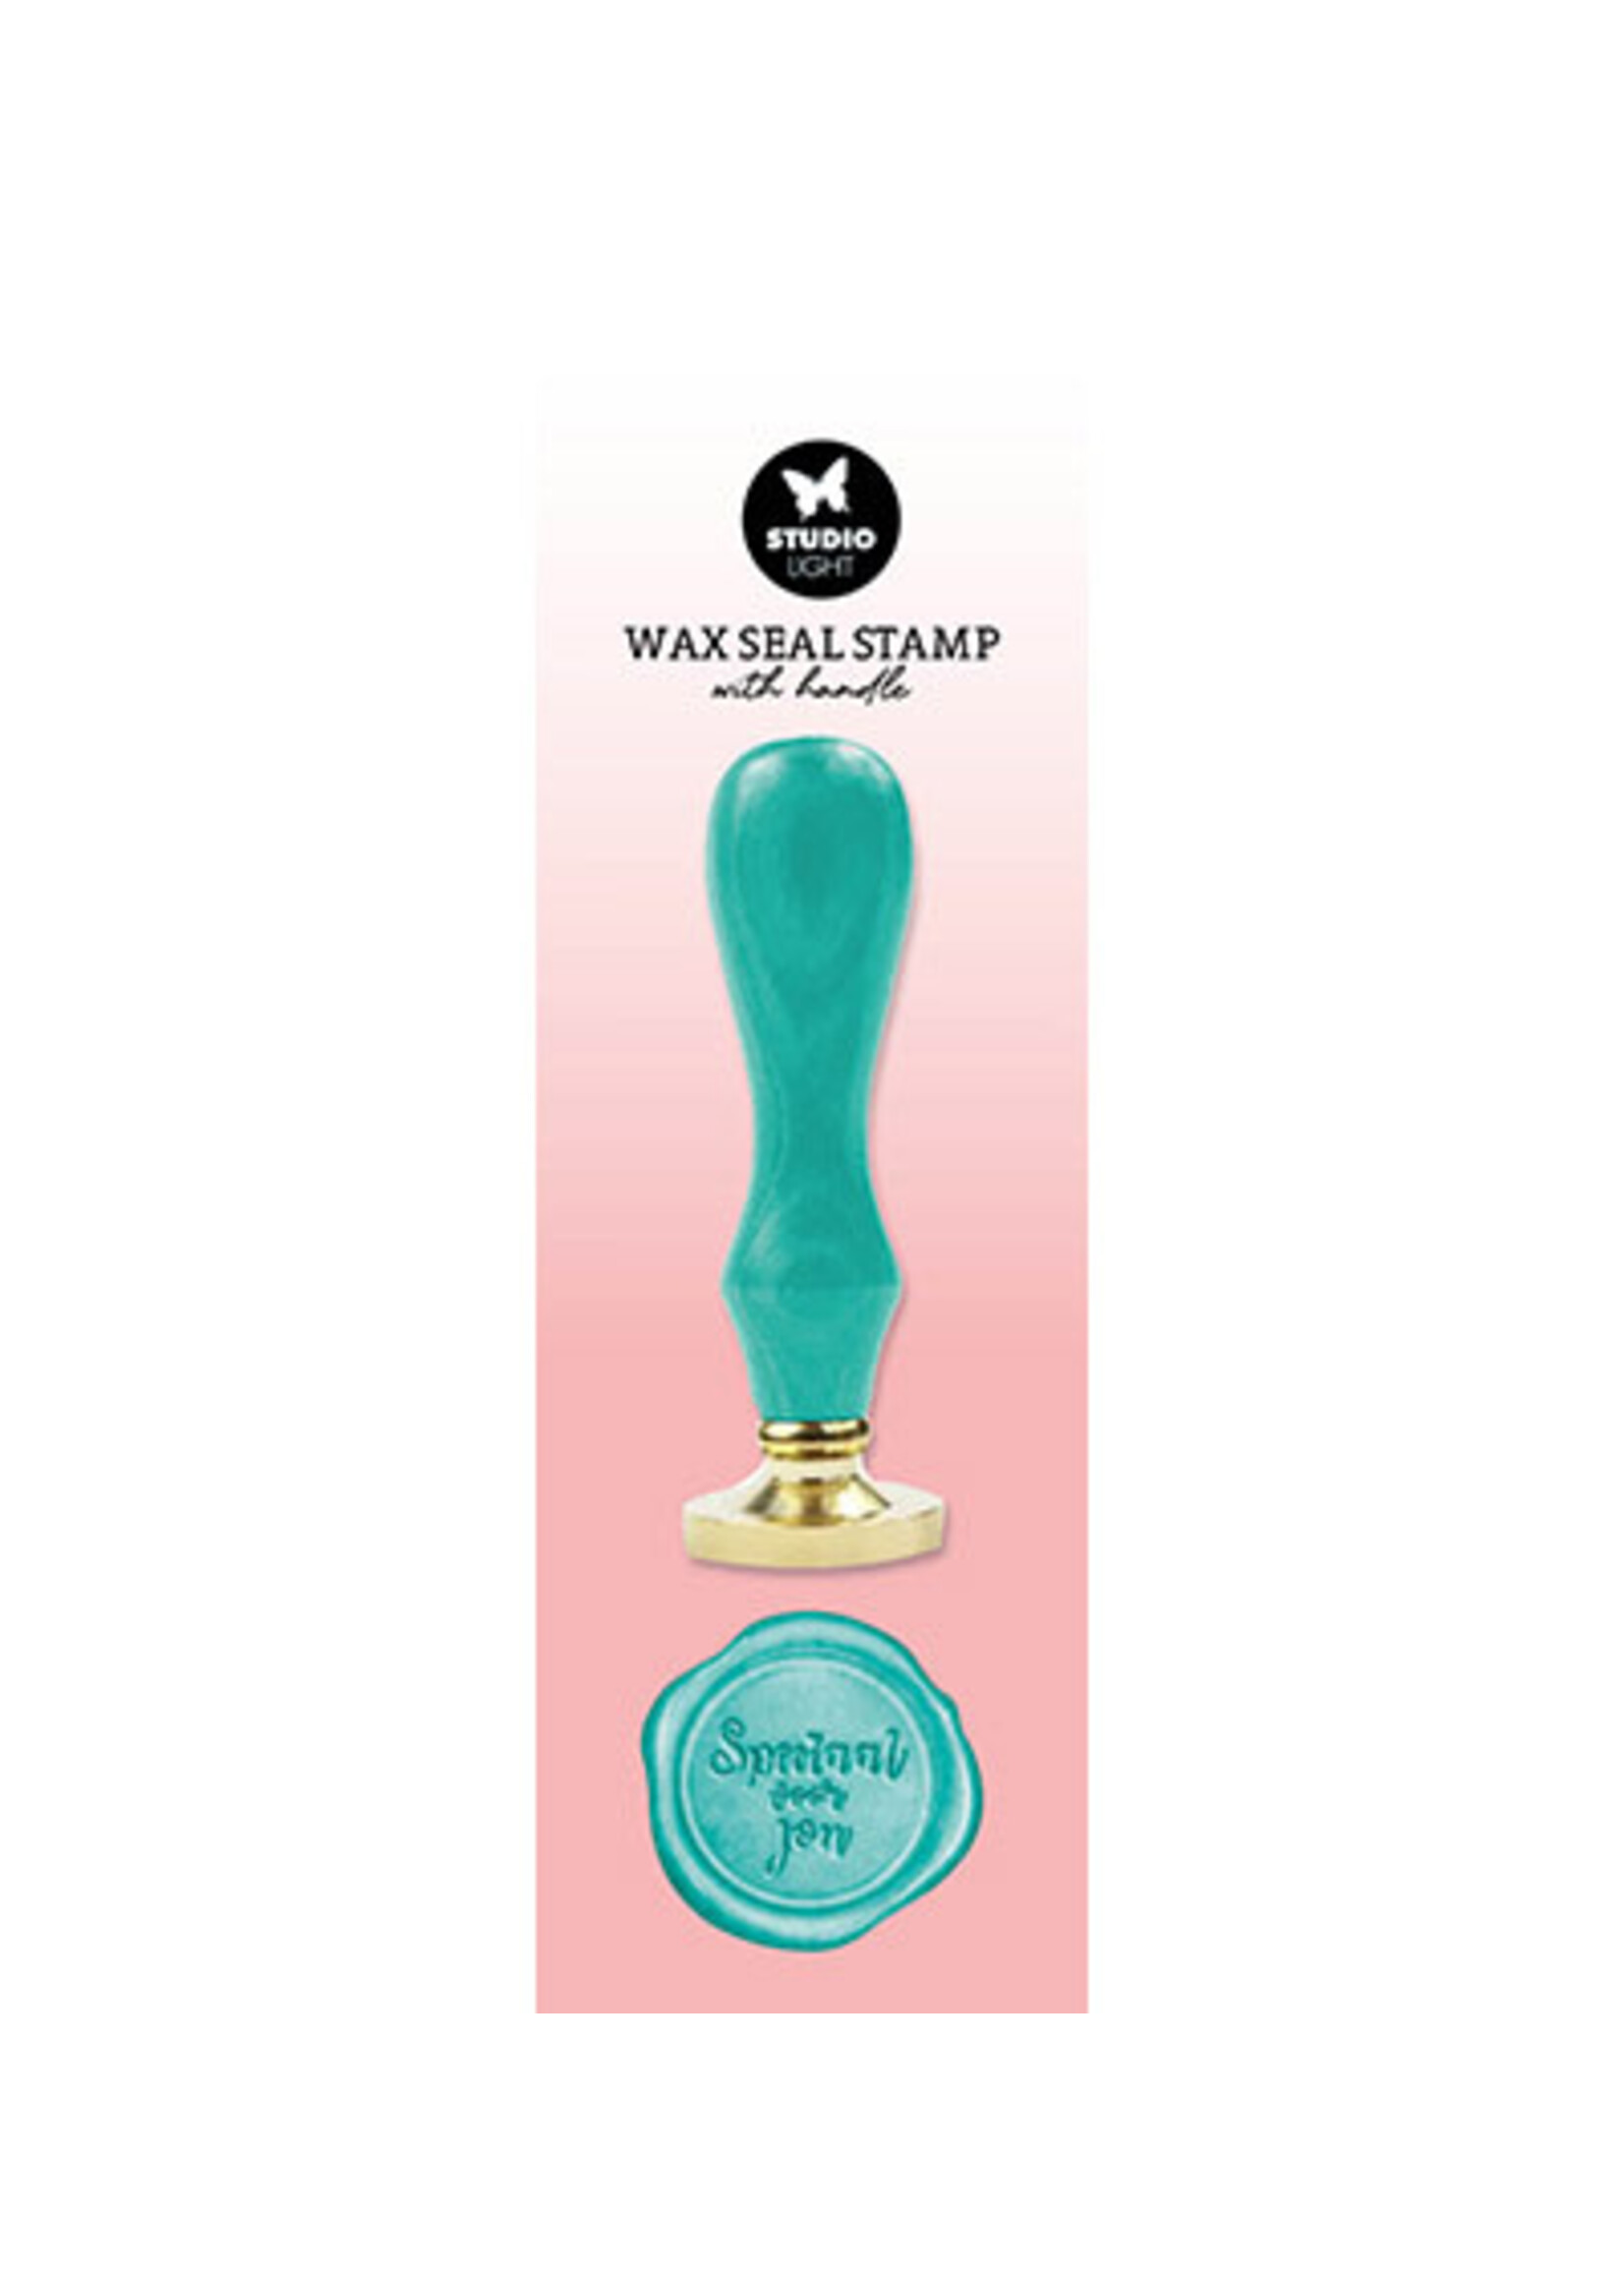 Studio Light SL-ES-WAX11 - Wax Stamp with handle Turquoise Speciaal voor jou Essentials Tools nr.11